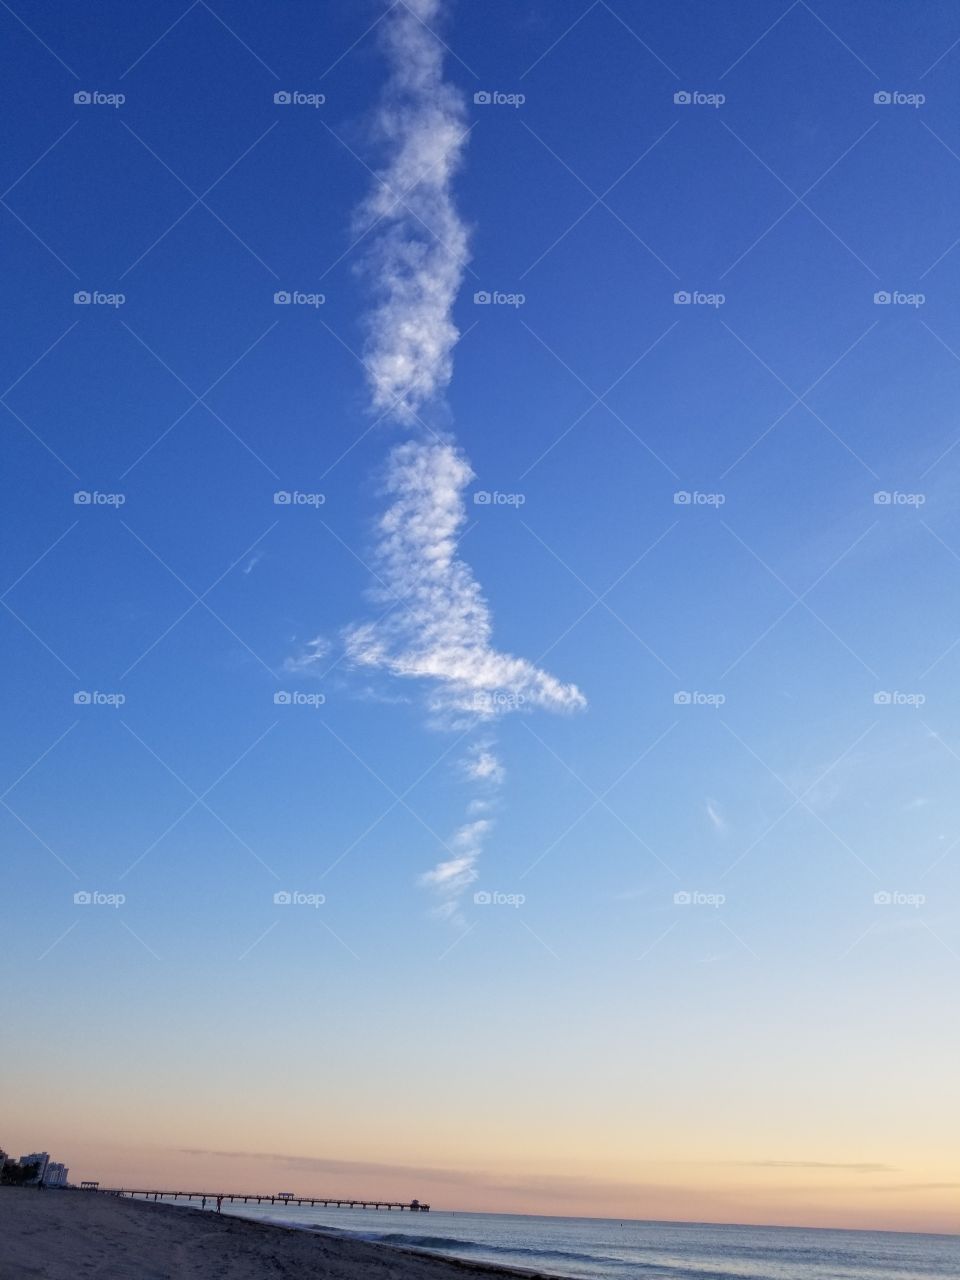 A bird made of clouds.